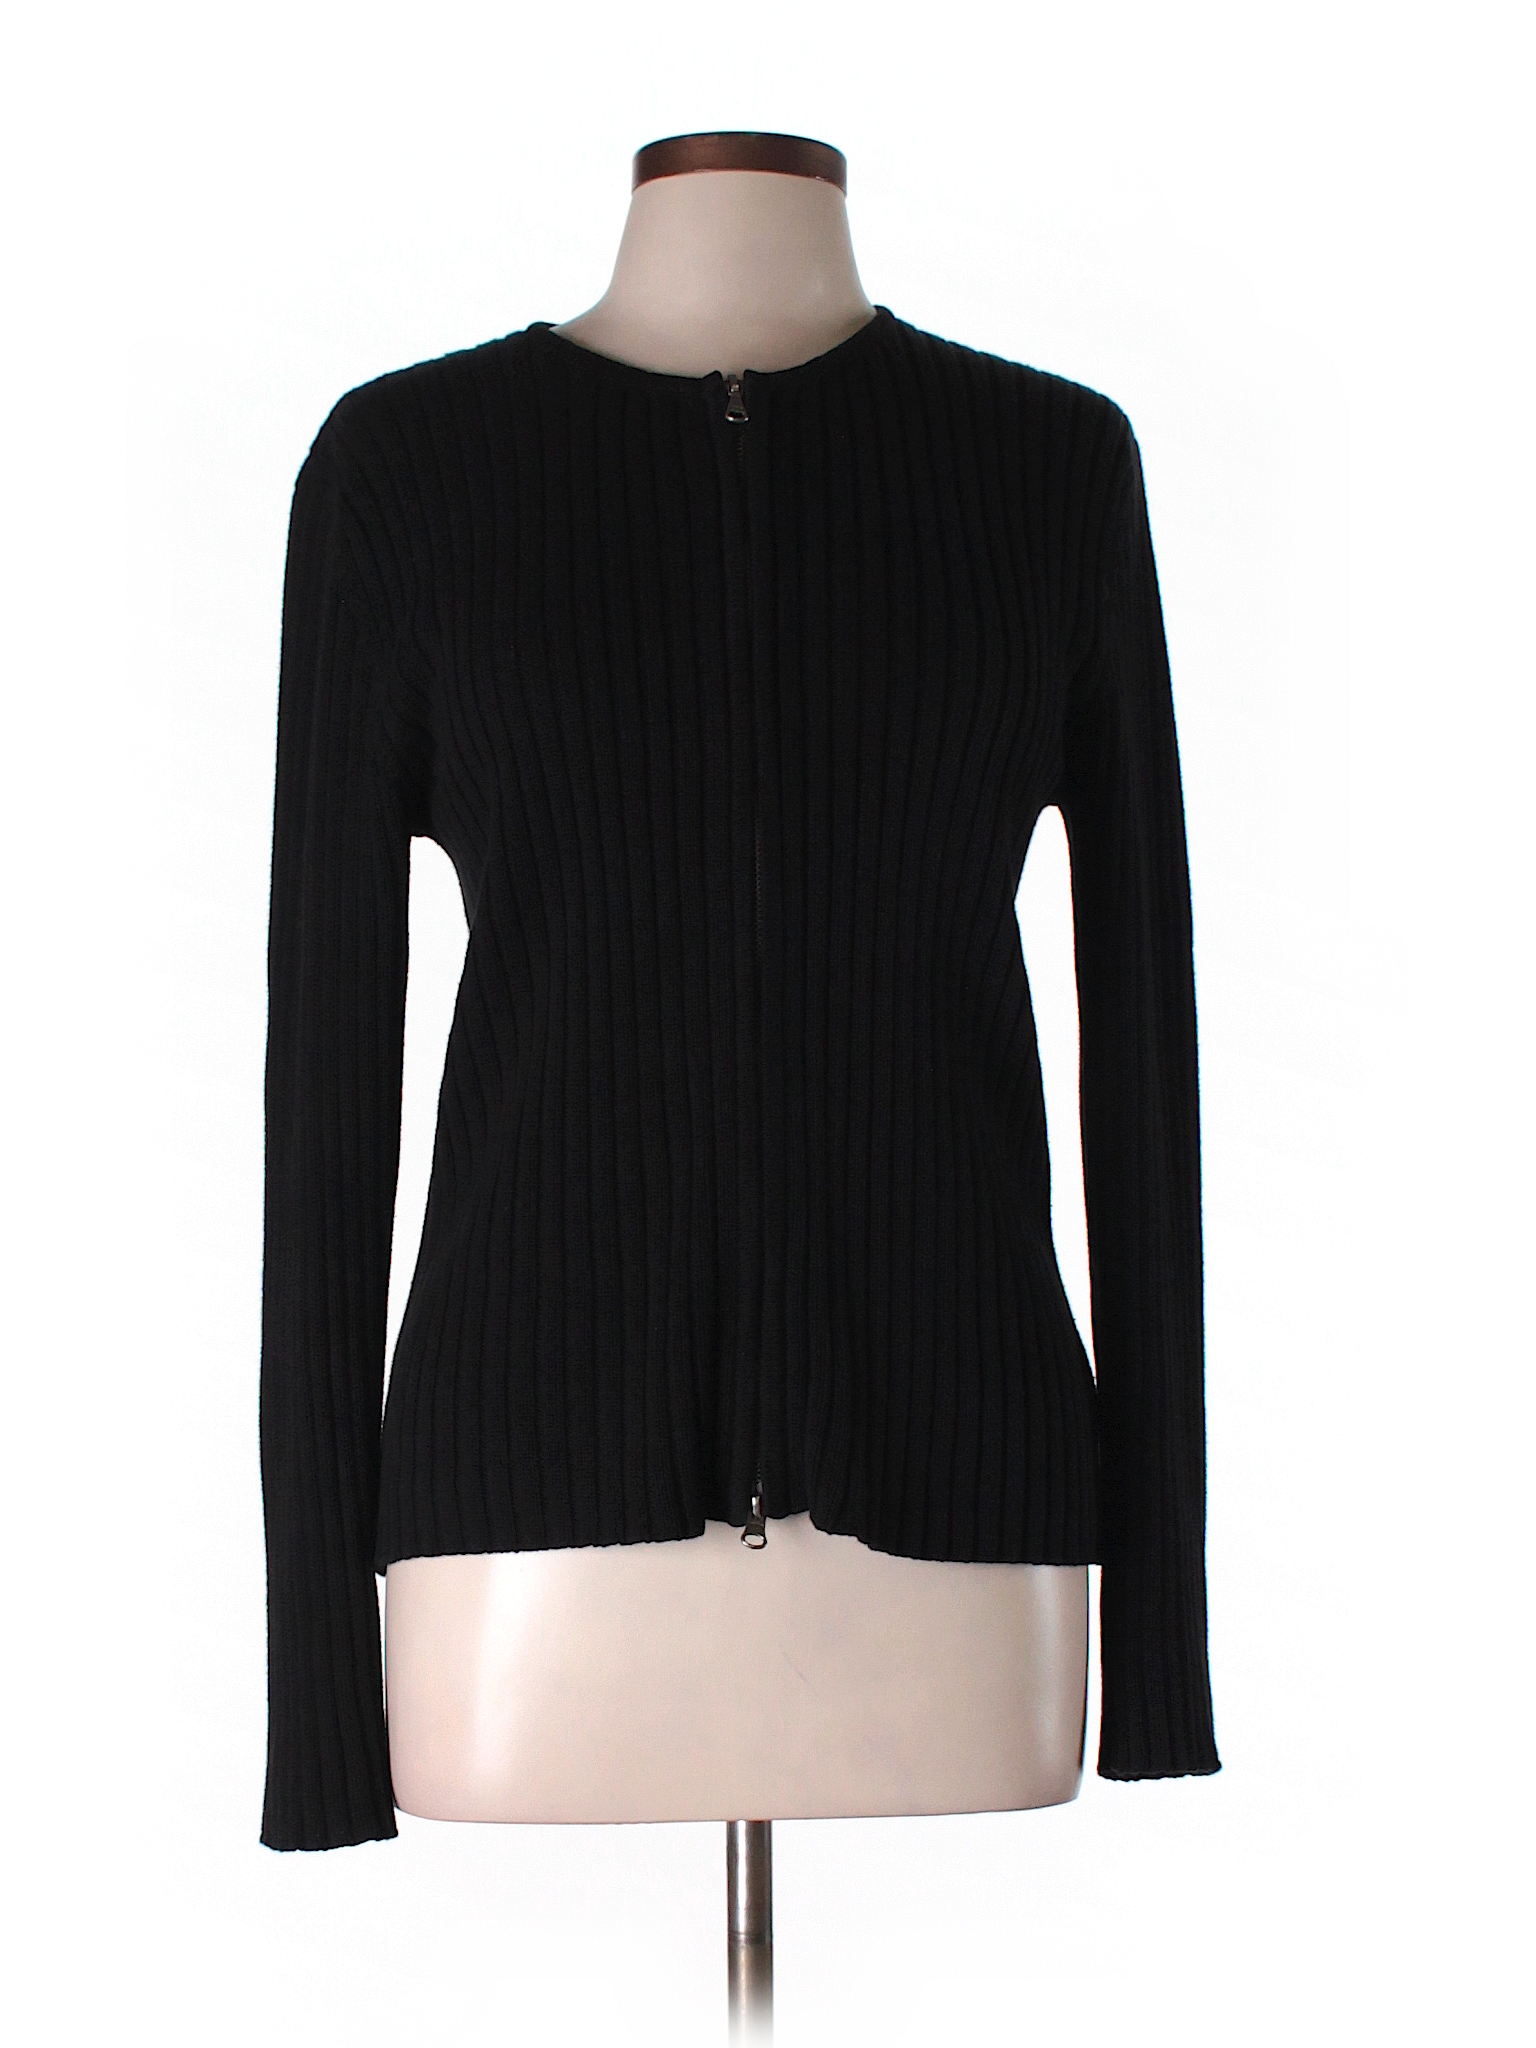 Lauren by Ralph Lauren 100% Cotton Solid Black Cardigan Size L - 96% ...